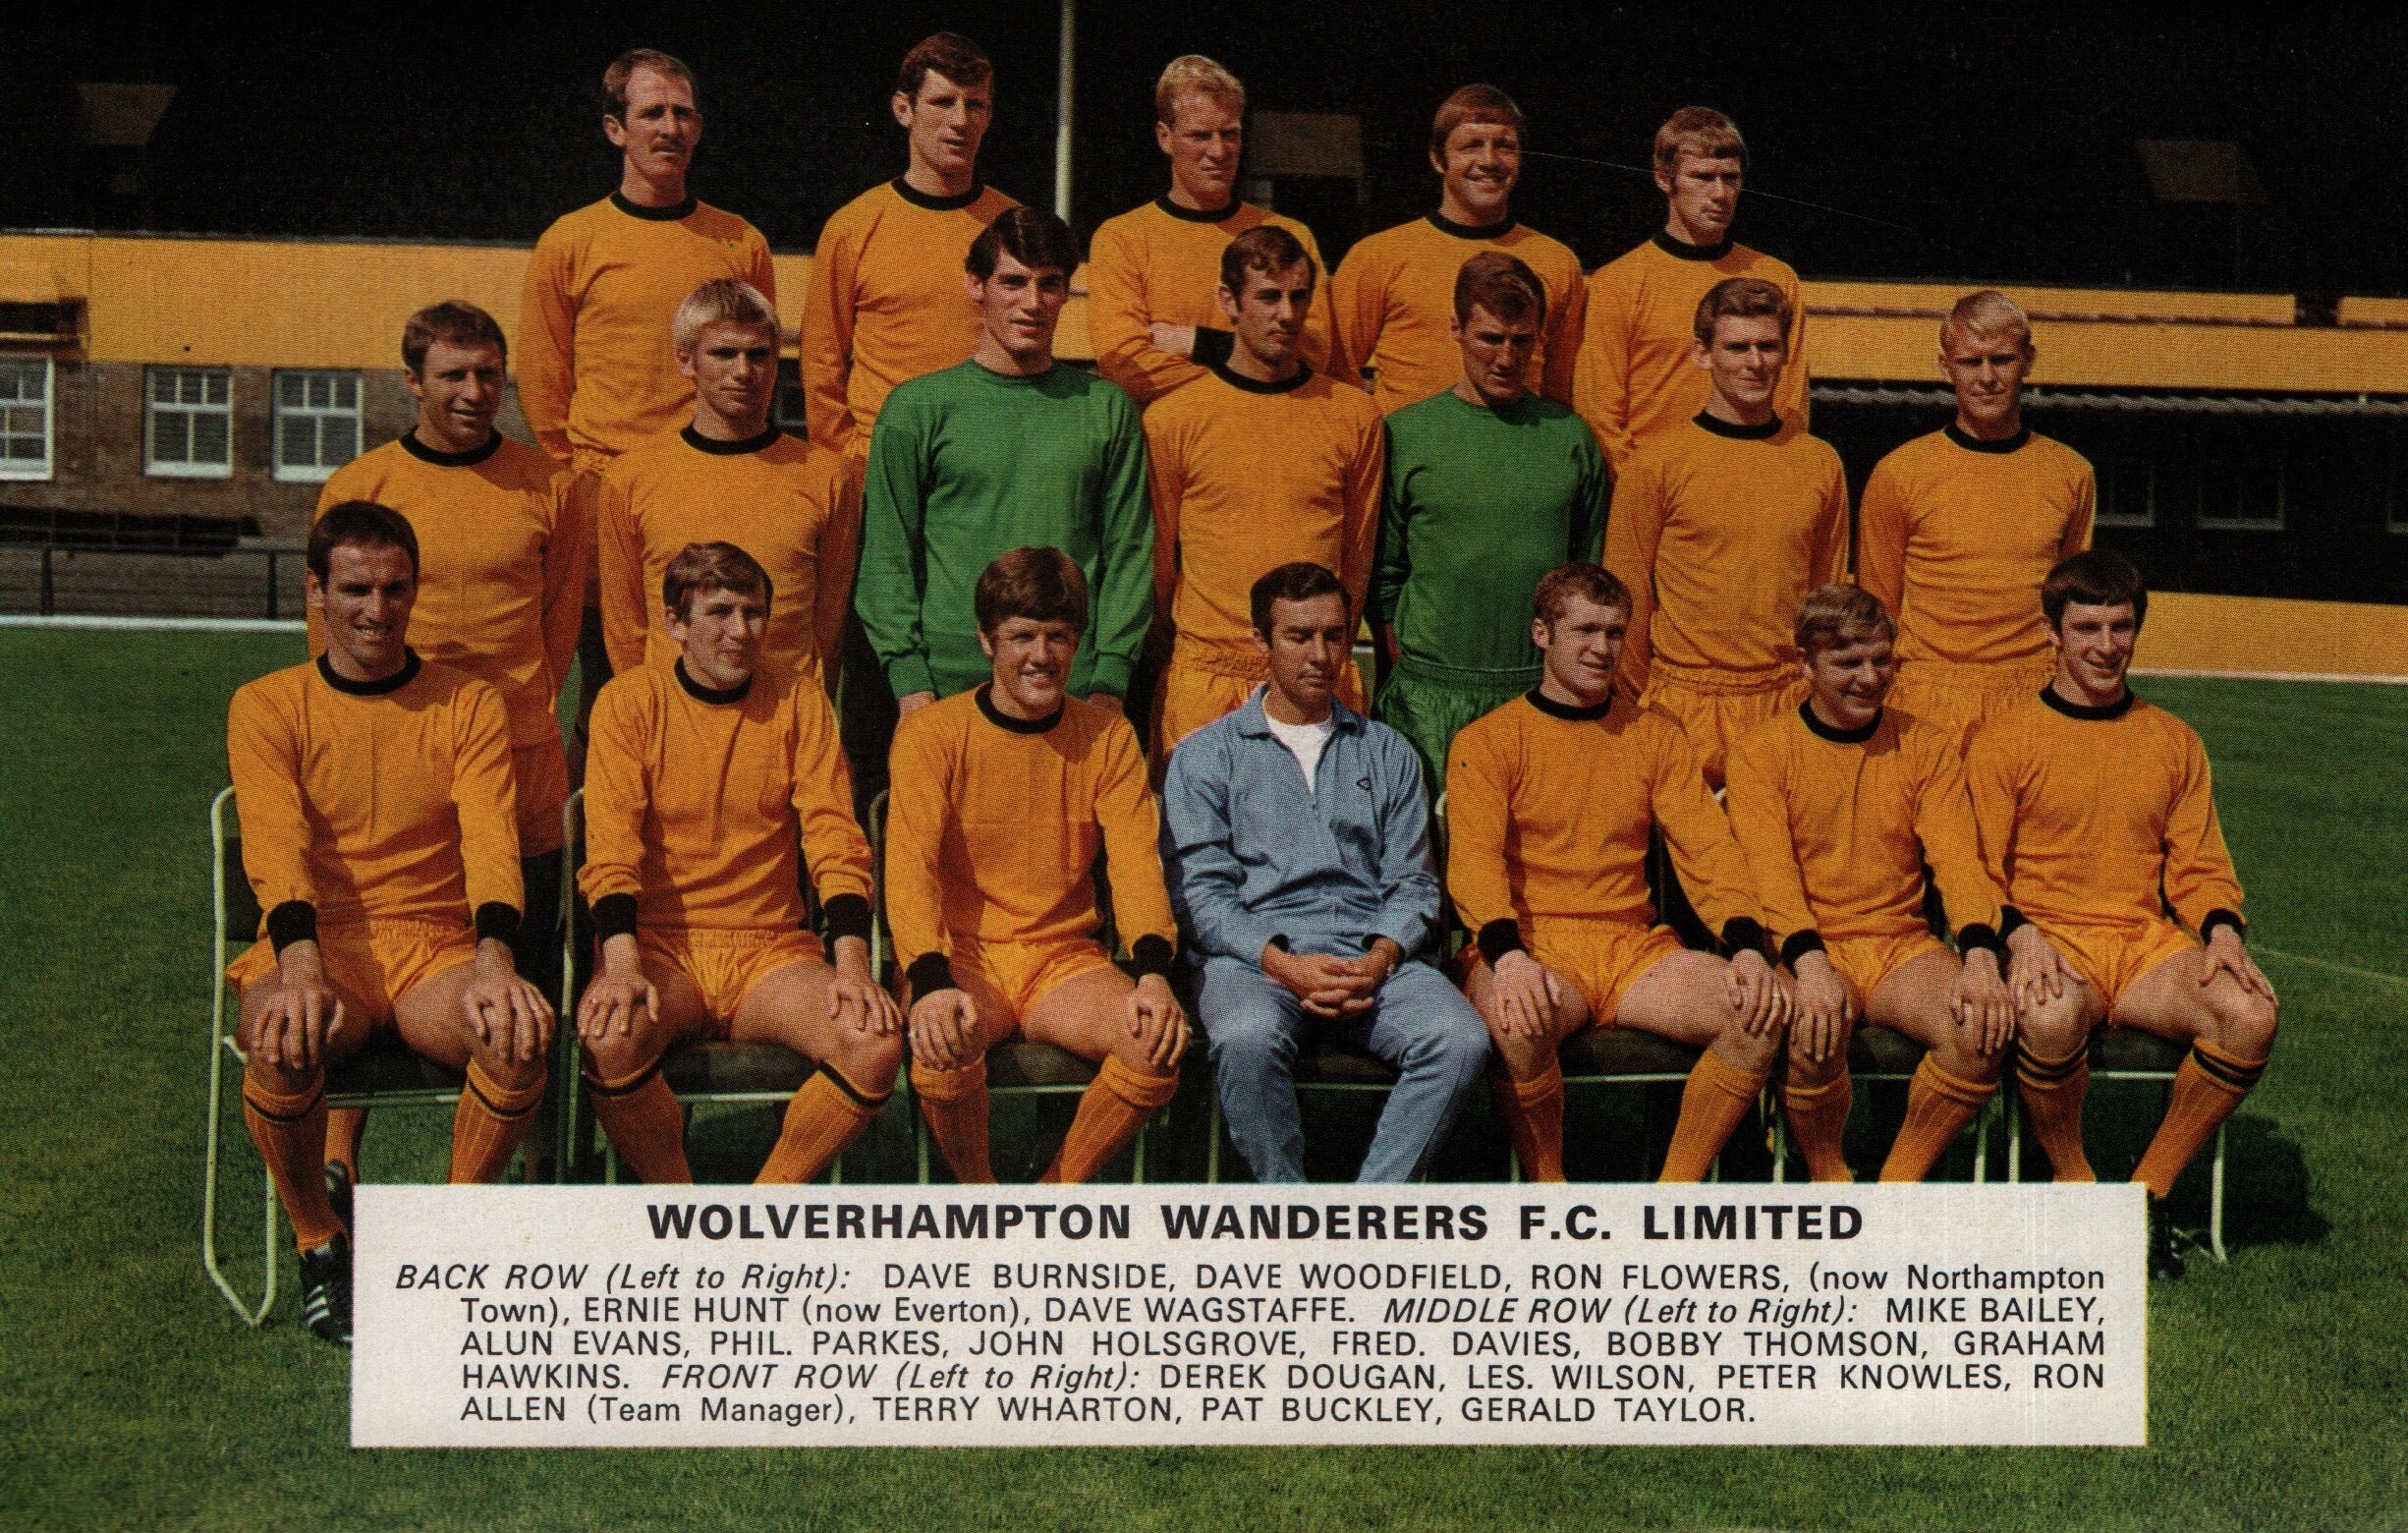 22 Wolverhampton Wanderers.jpg